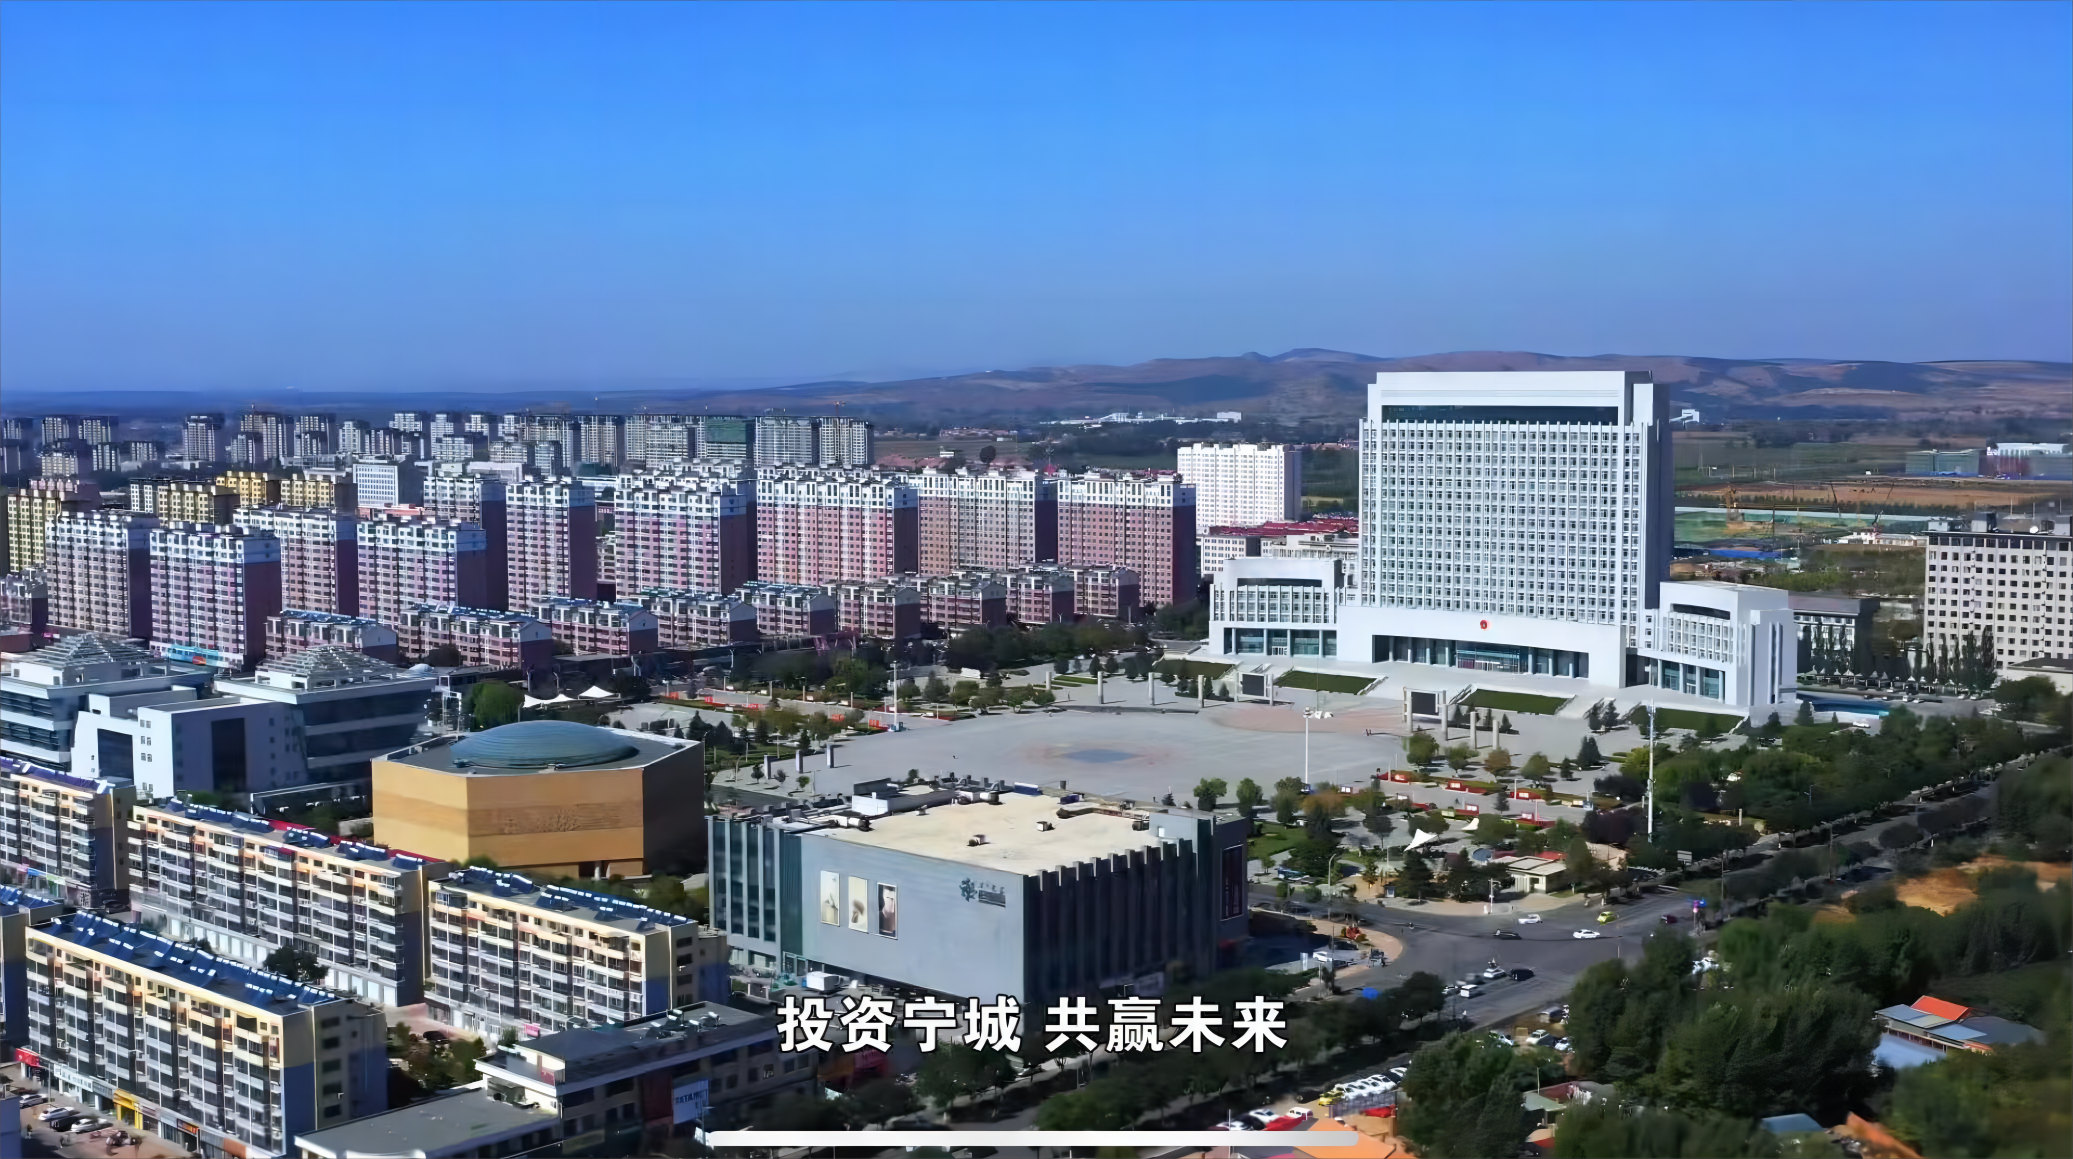 宁城政府大楼事件图片